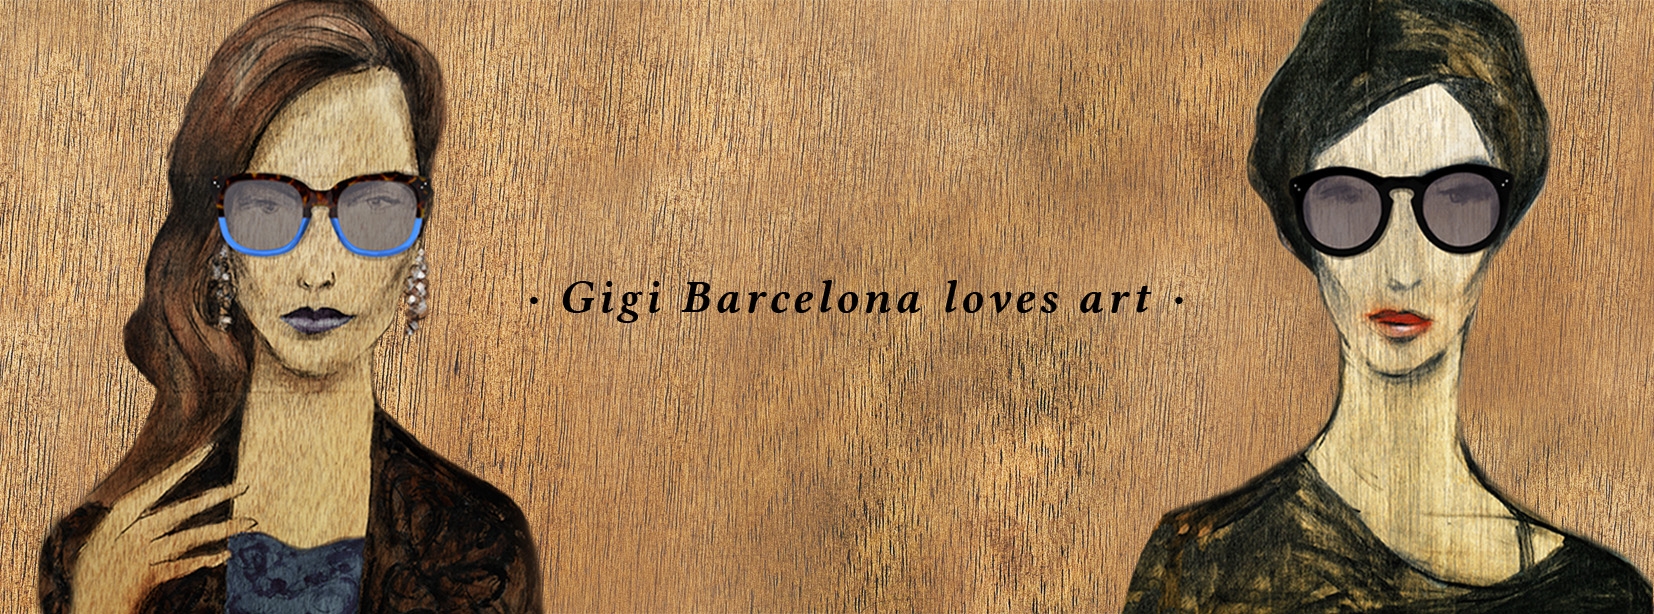 Gigi bcn loves art_Lempicka and Kelly